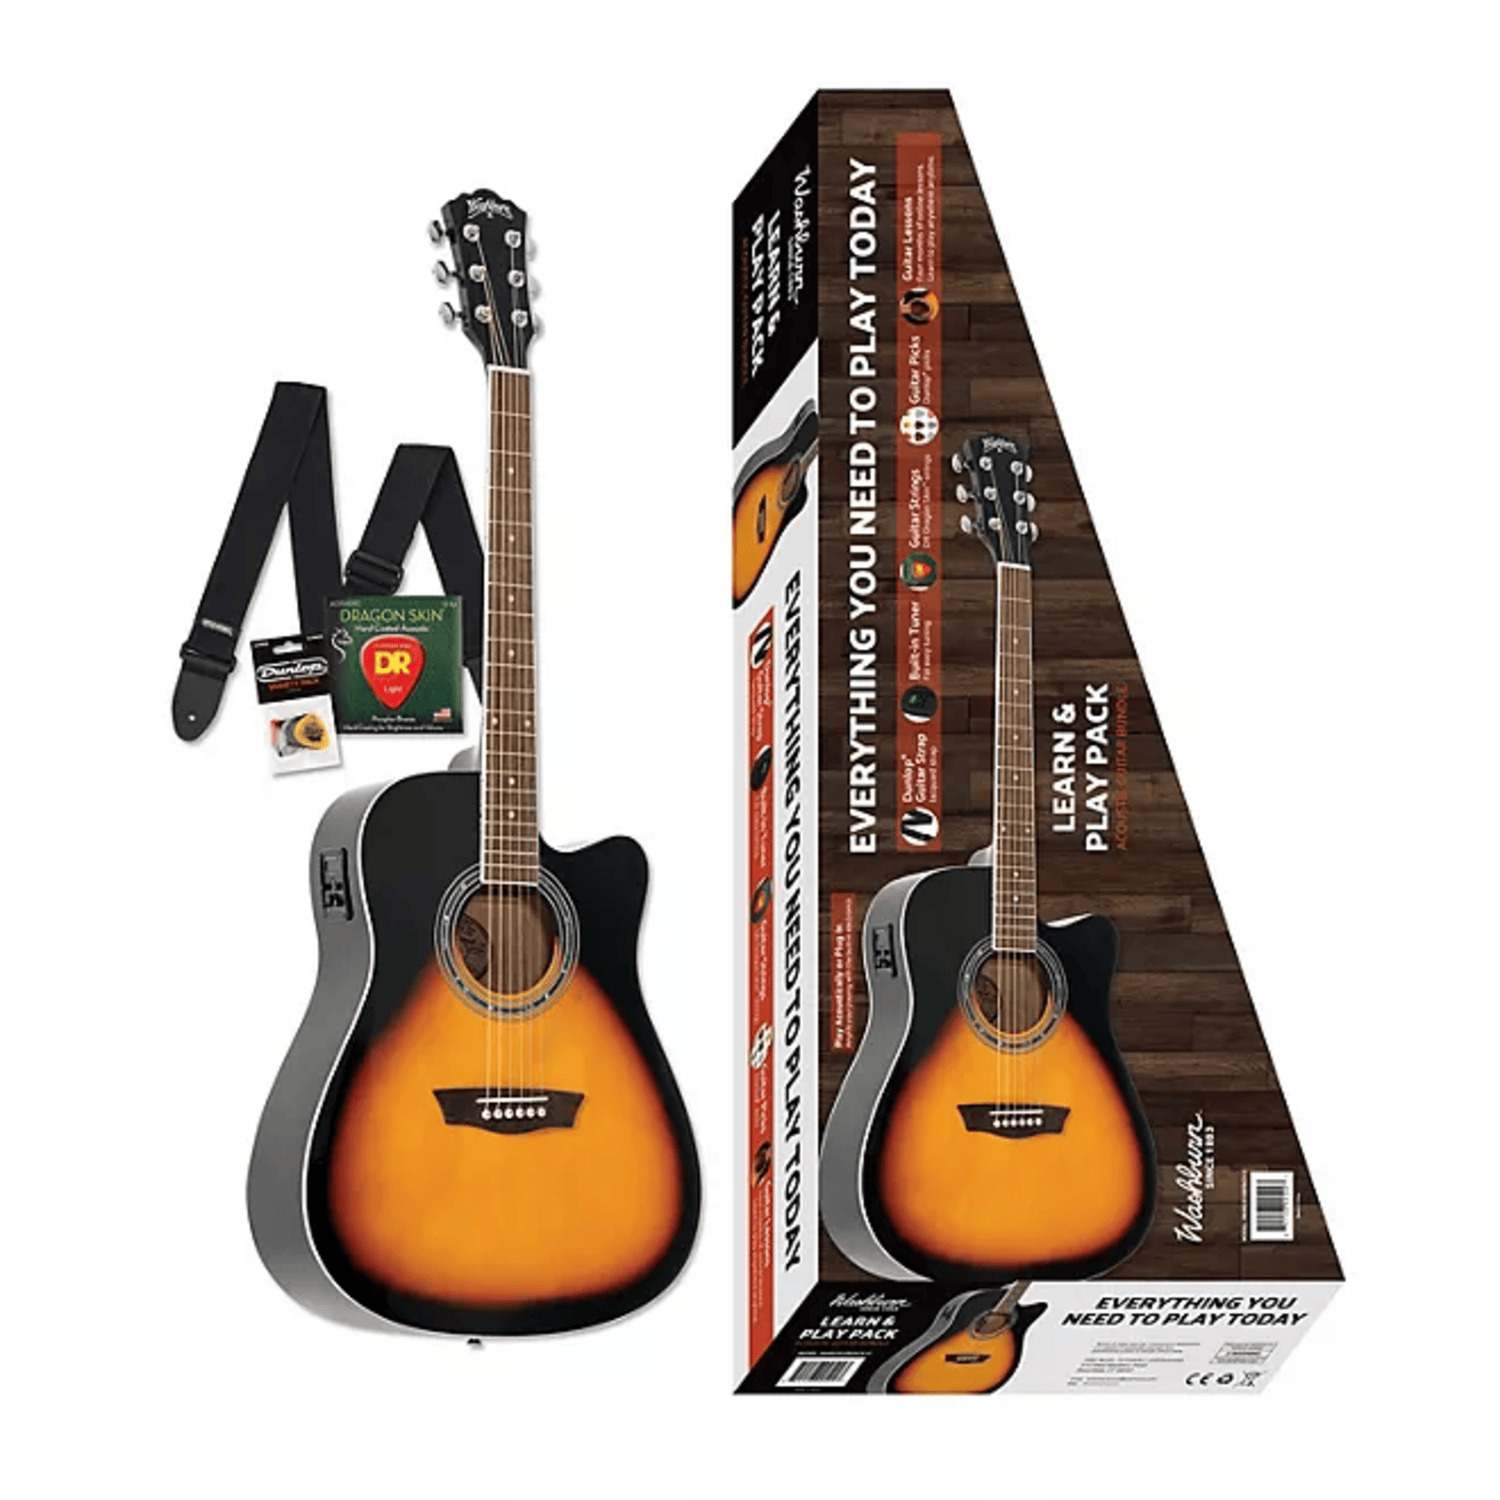 Washburn Guitars WA90CEVSBPACK-U Learn & Play Pack Acoustic Guitar Bundle